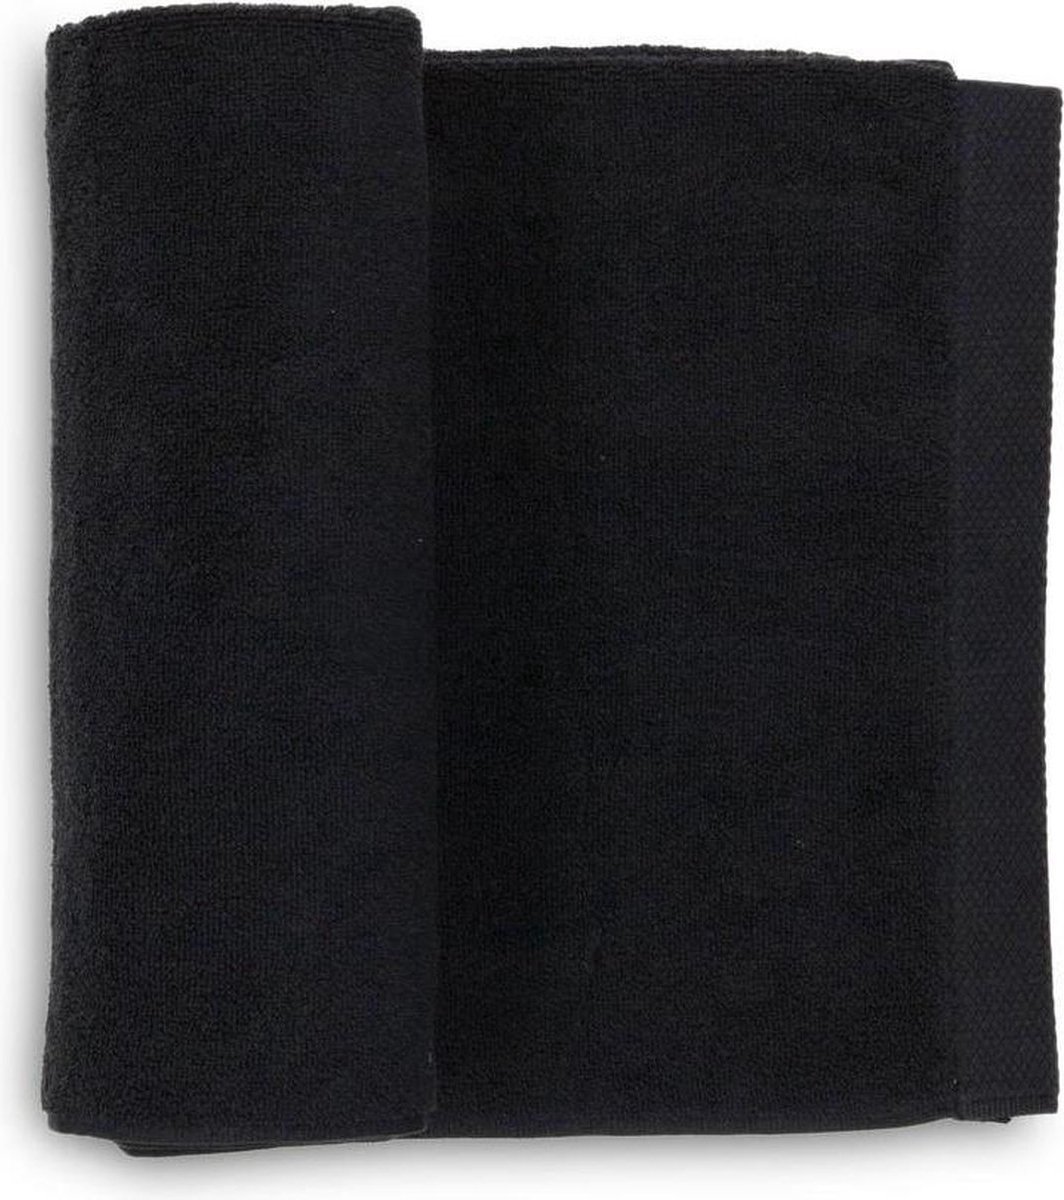 Heckett & Lane 2-pack katoen handdoeken zwart - 60x110 - luxe uitstraling - huidvriendelijk en duurzaam